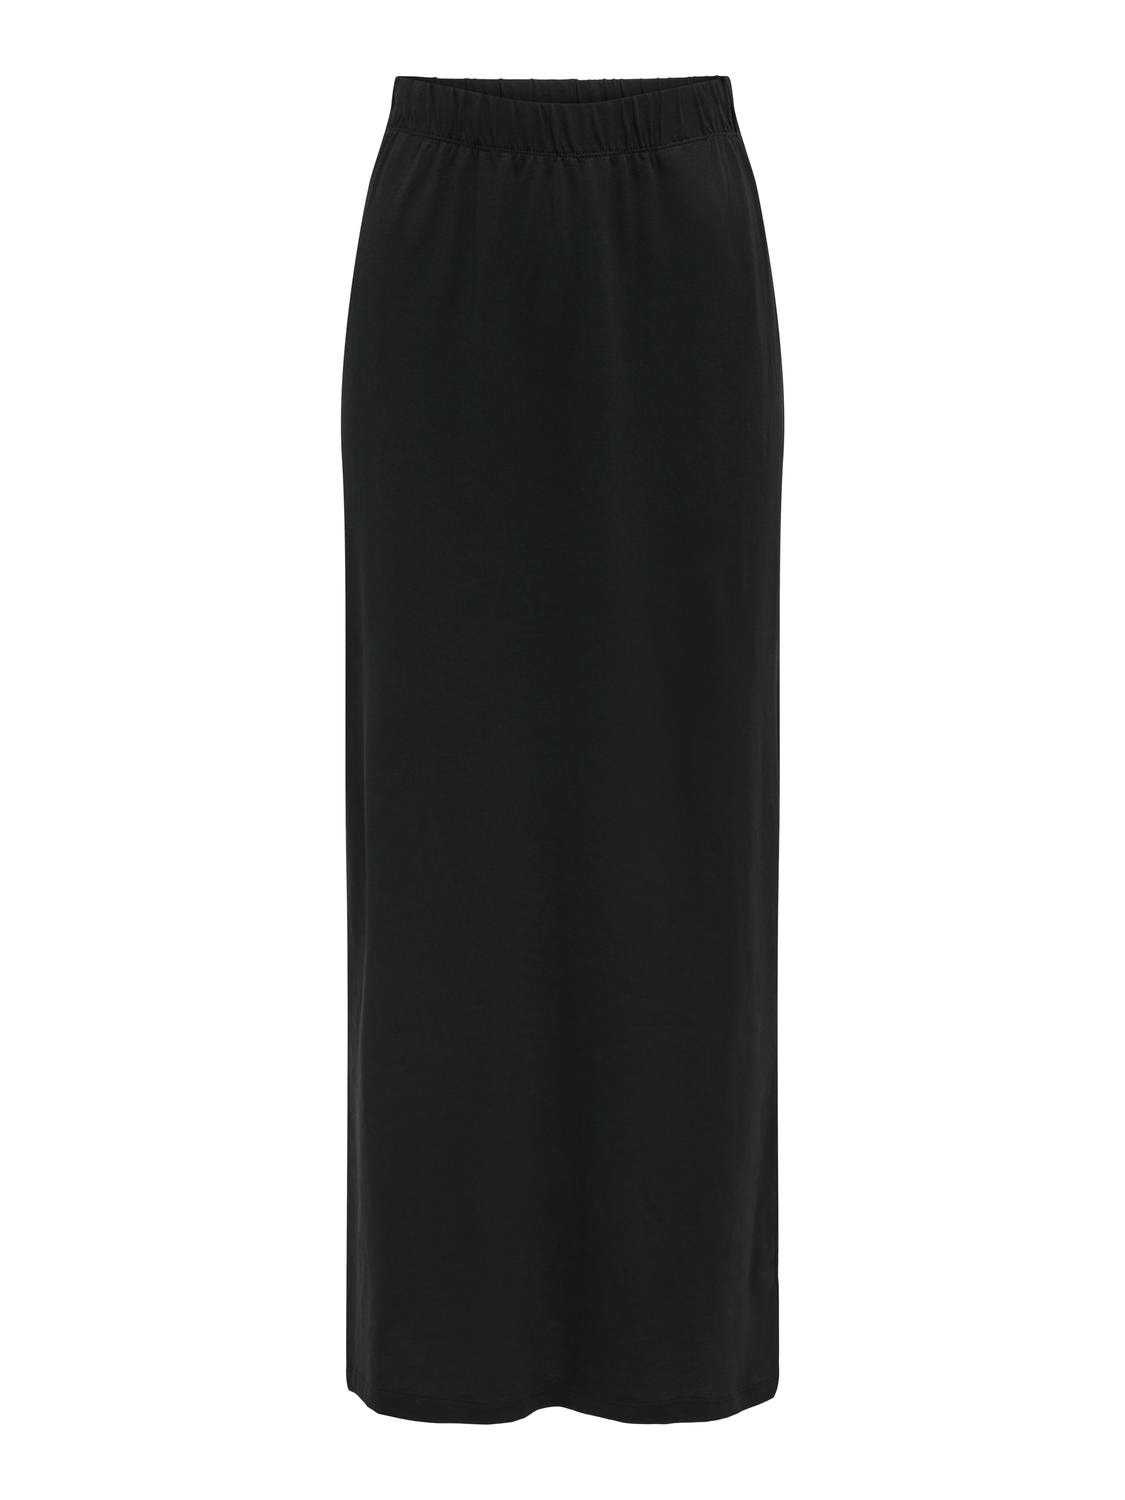 ONLY Maxi skirt -Black - 15322351